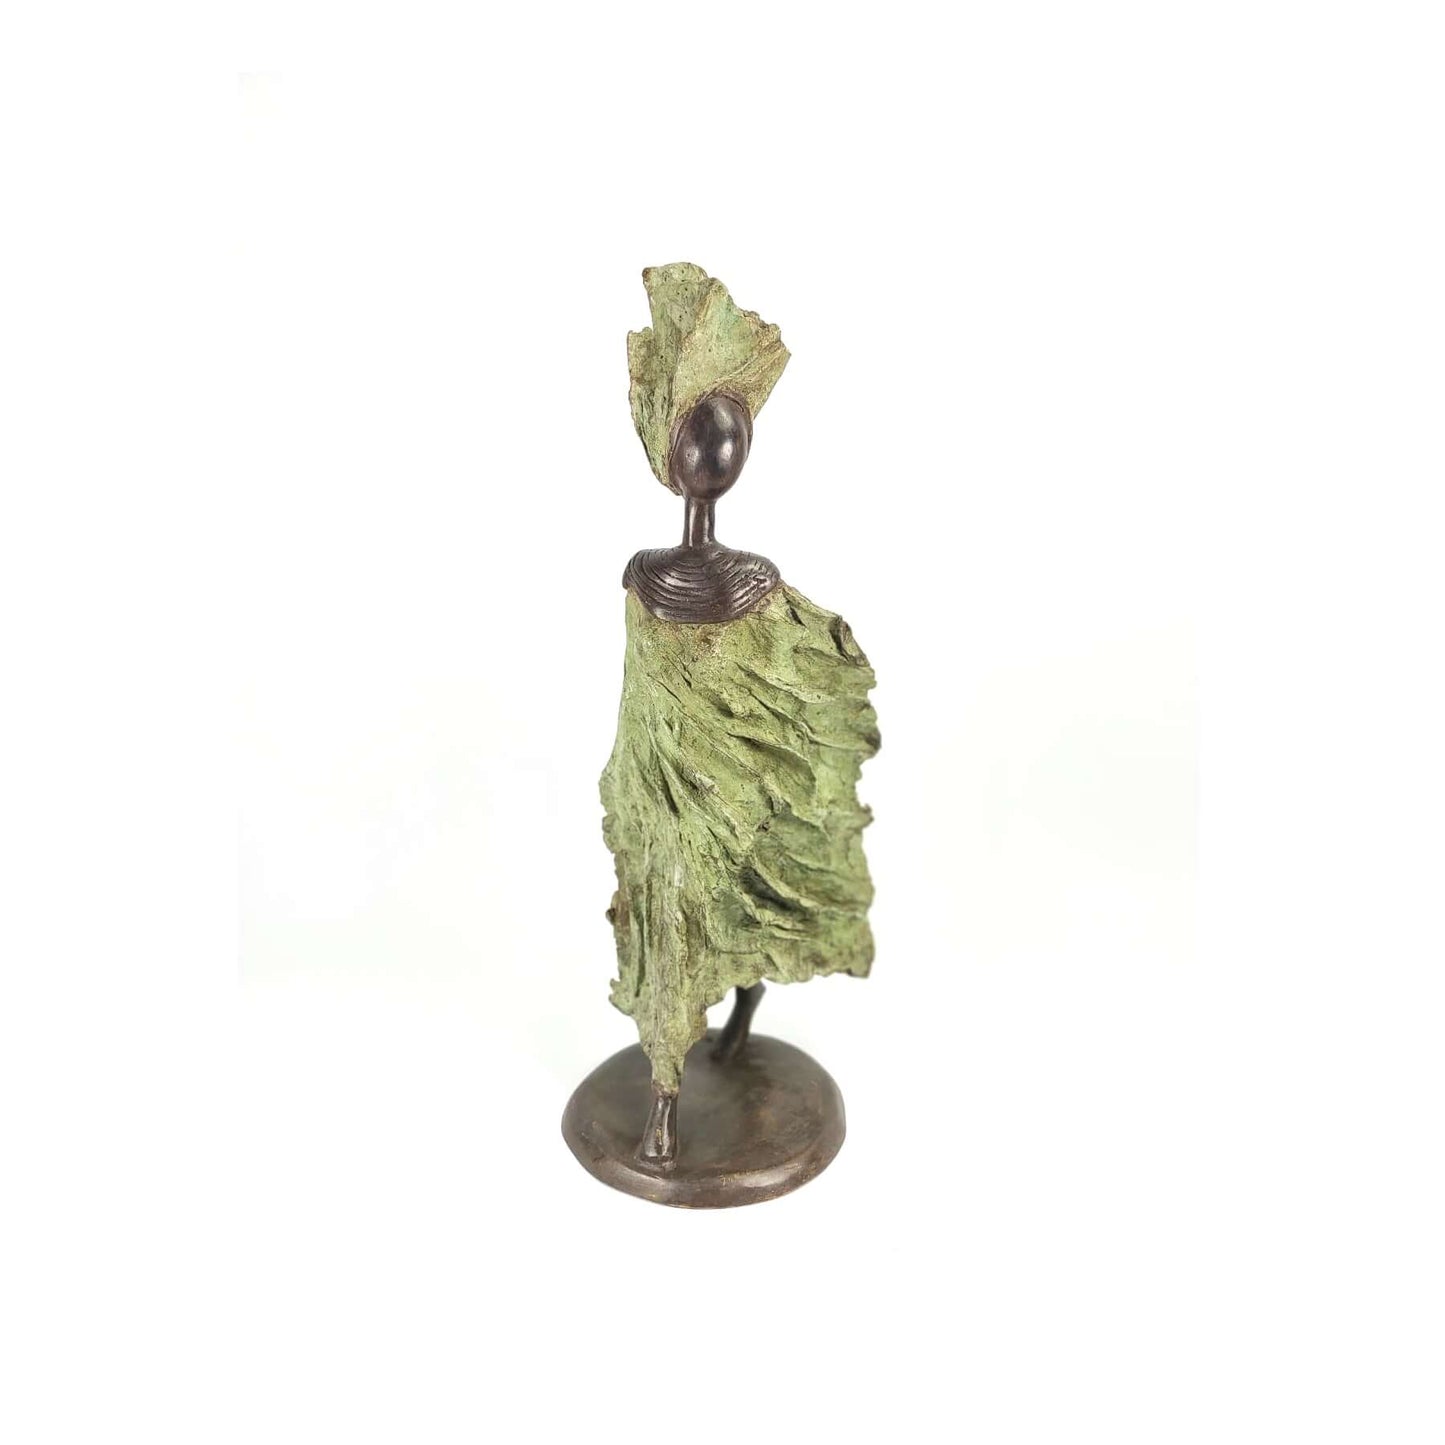 Bronze-Skulptur "Femme du Sahel" | by Patrice Balma | 36-40 cm 4 kg | Unikate